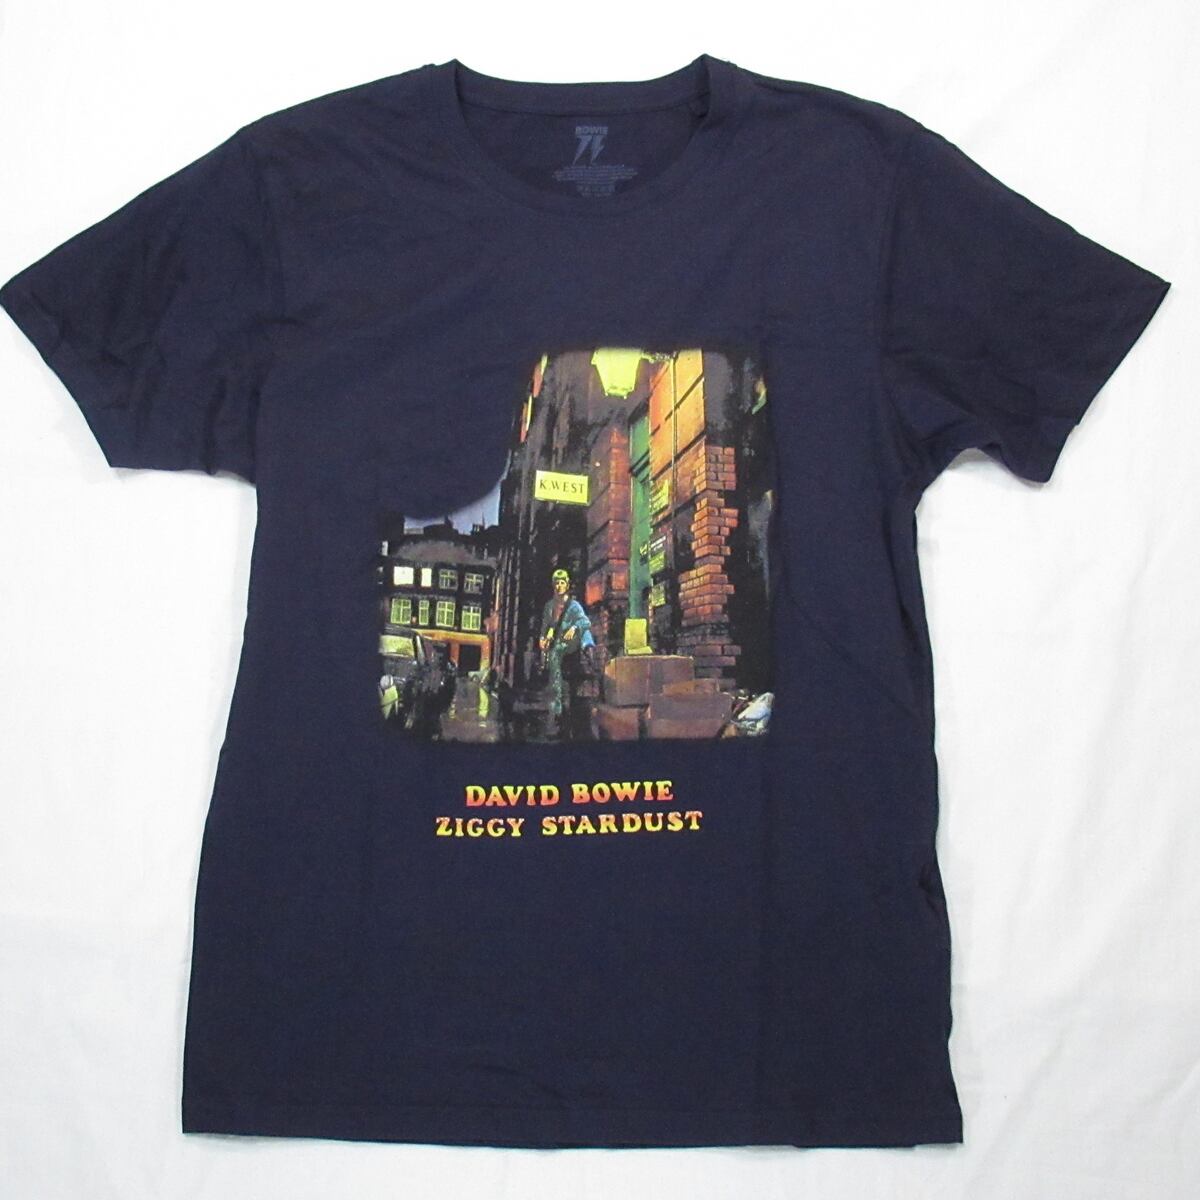 【デヴィッド ボウイ】新品 UK グラム ロック ジギー スターダスト Tシャツ